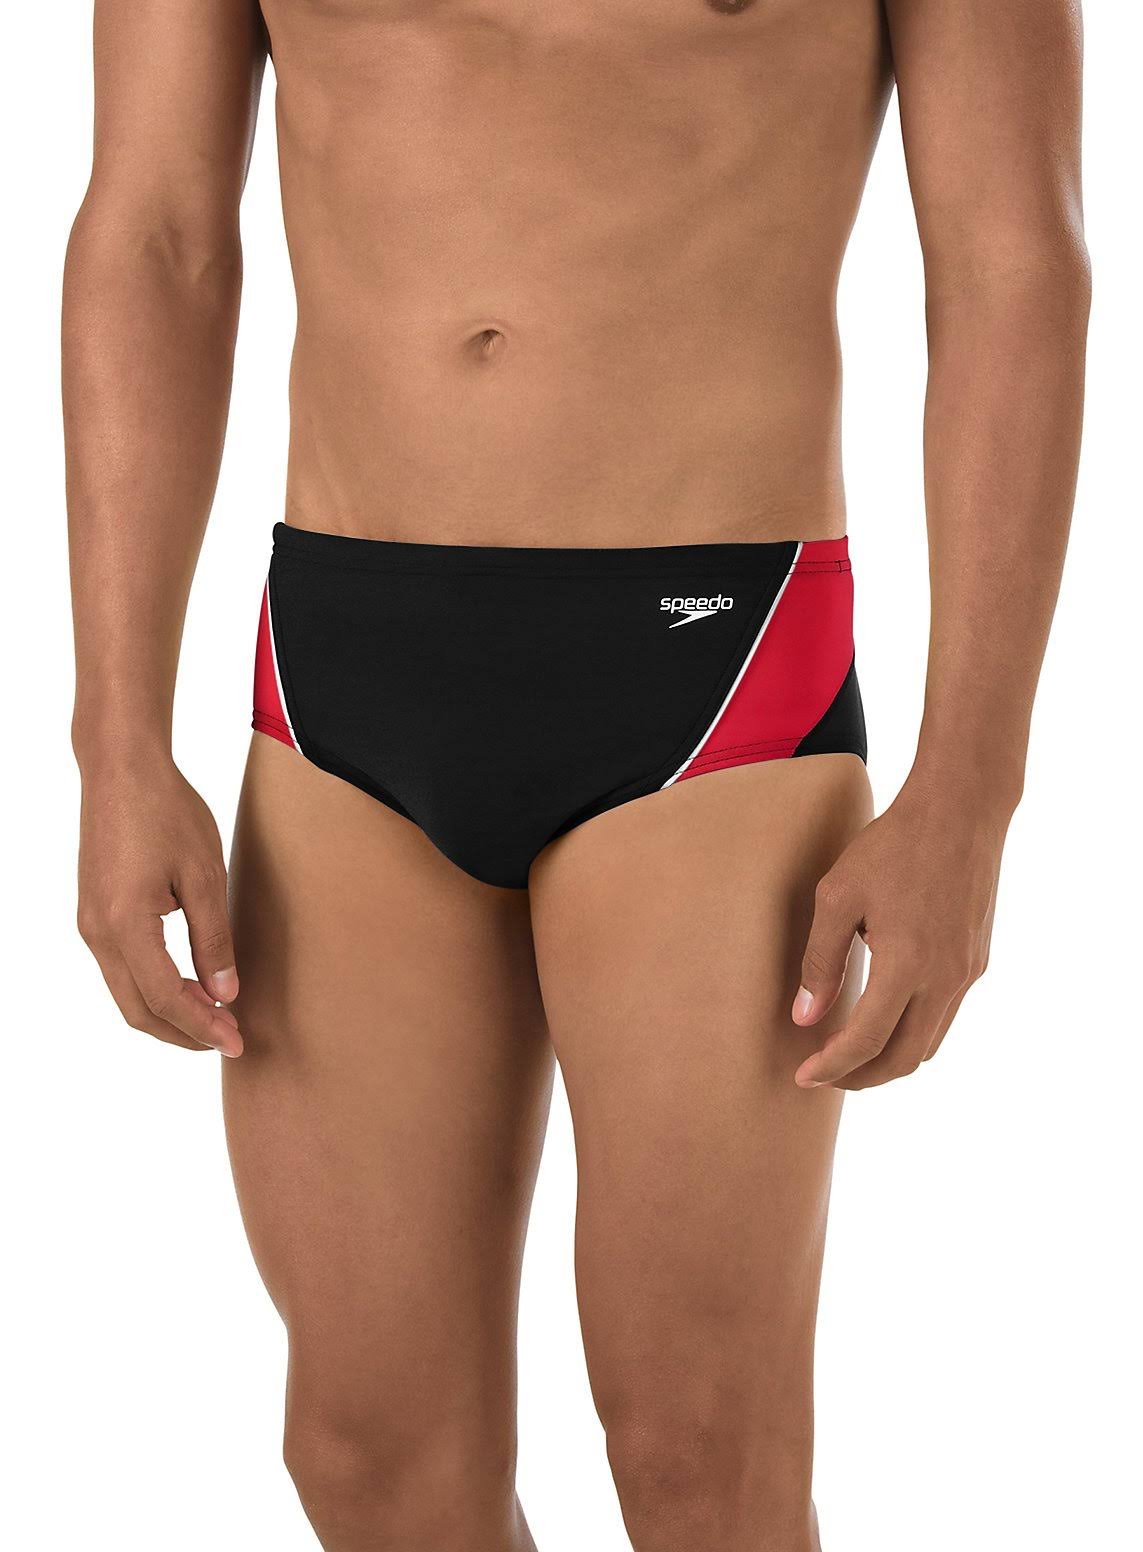 SPEEDO Solid Brief Launch Splice Men's Swimsuit, Black (Size: 30)